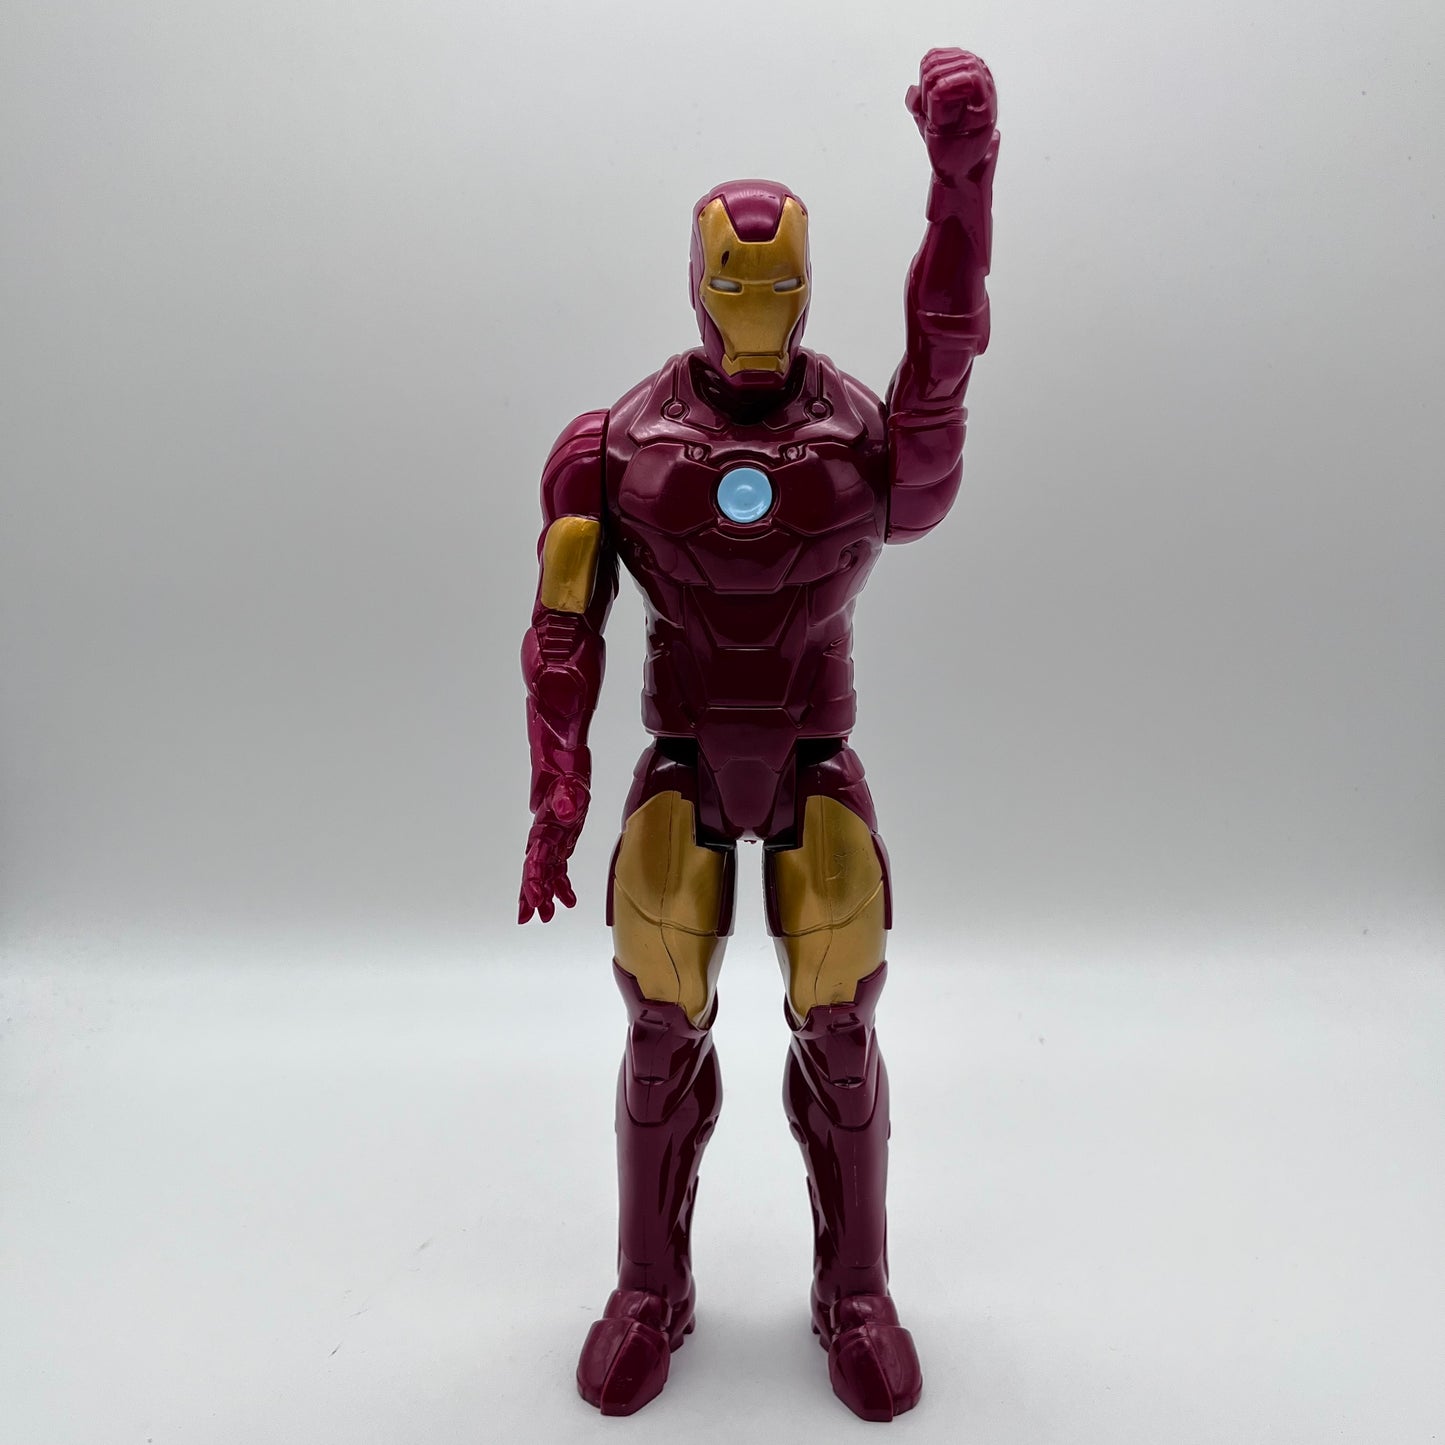 Iron Man Action Figure 12”